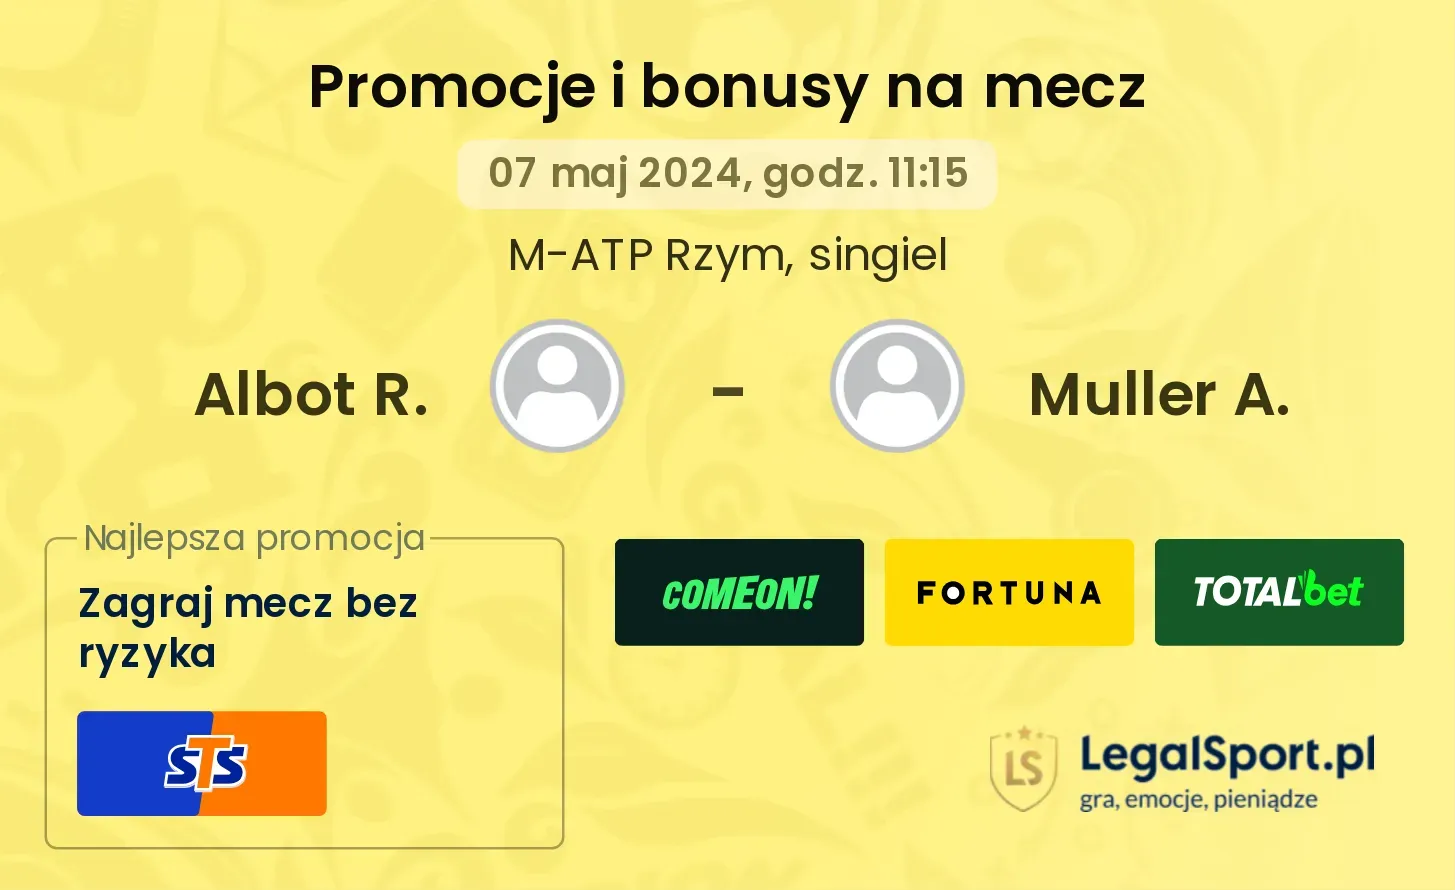 Albot R. - Muller A. promocje bonusy na mecz